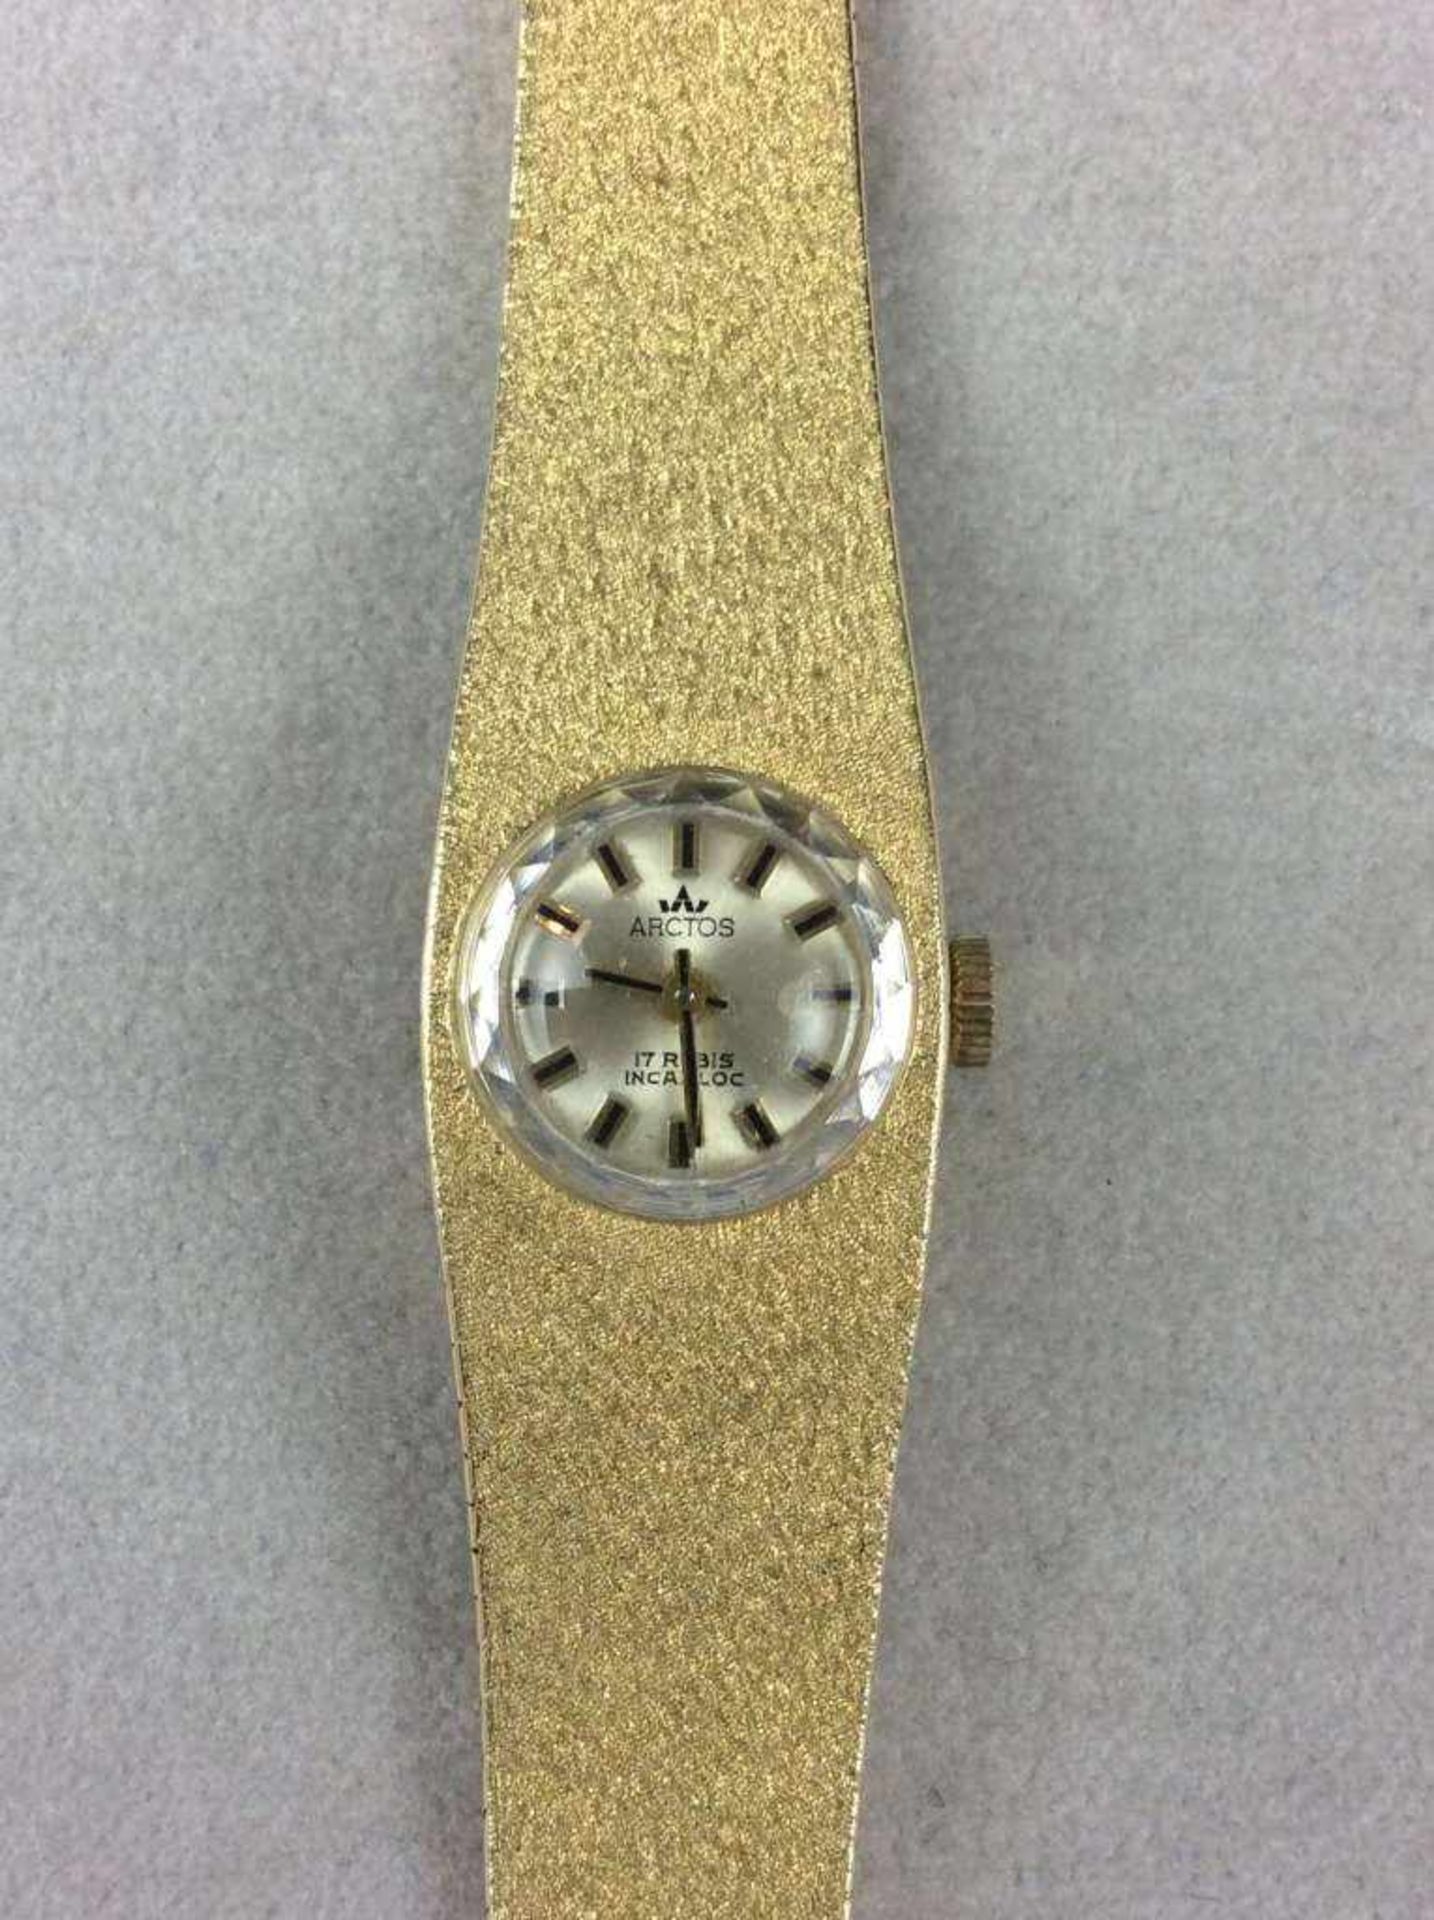 Arctos Damenarmbanduhr aus 585er-Gelbgold, rundes Zifferblatt, mechanisches Uhrwerk/Handaufzug. - Bild 2 aus 3